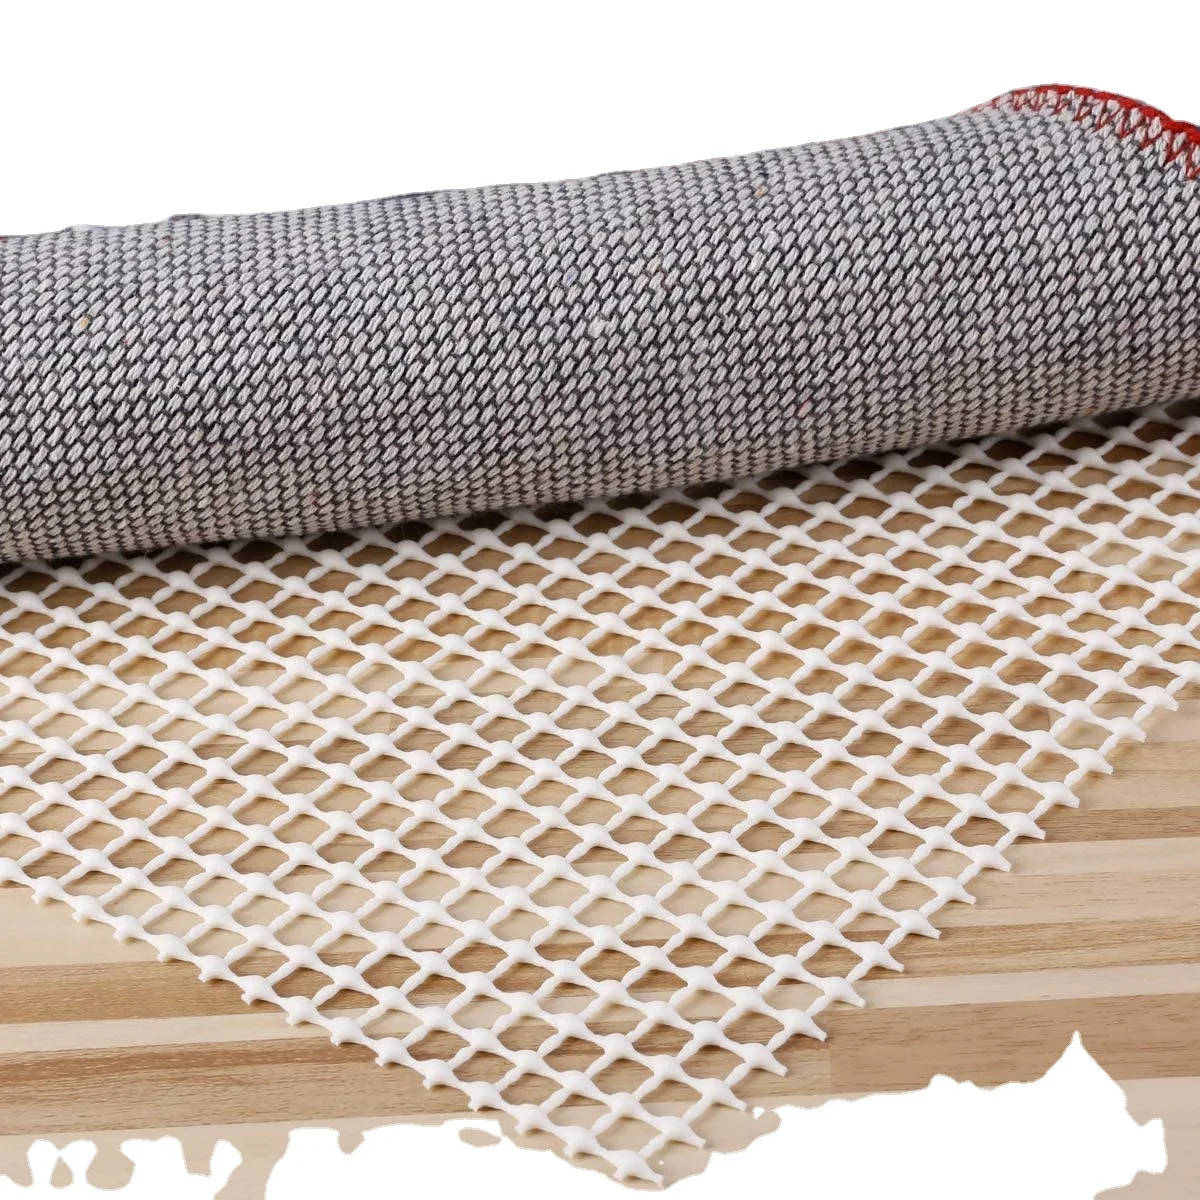 Non-Slip Carpet Underlay Rug Gripper Anti Slip Underlay Multi Purpose Liner  Non Slip Mat Mesh Non-Slip lining Carpets Rug Pad Mat for Hard Floors